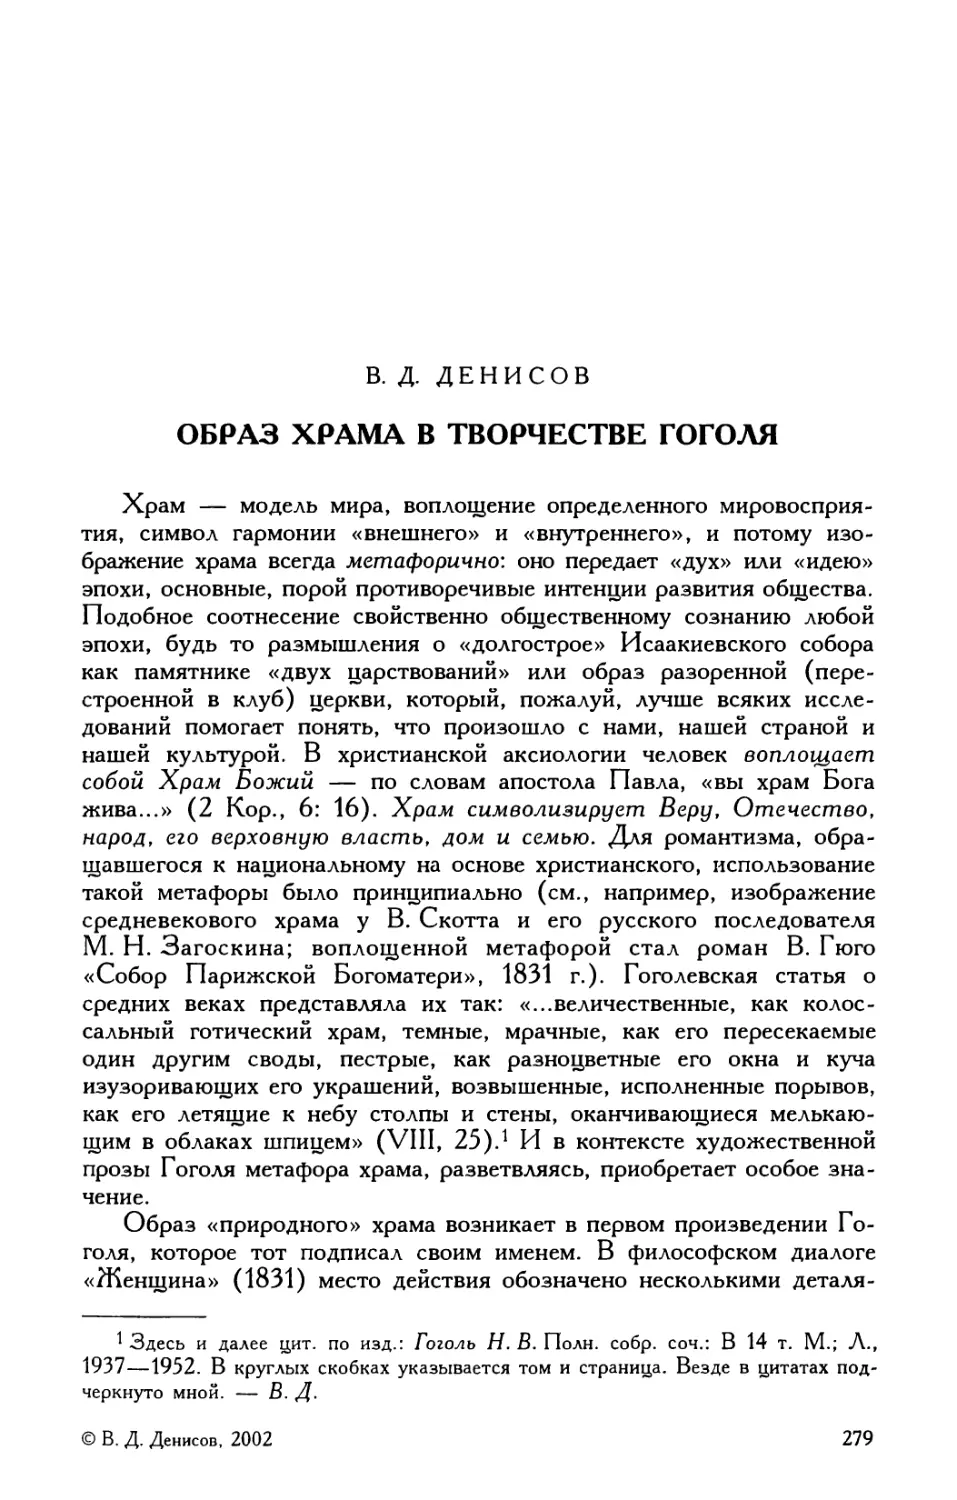 В.Д. Денисов. Образ храма в творчестве Гоголя